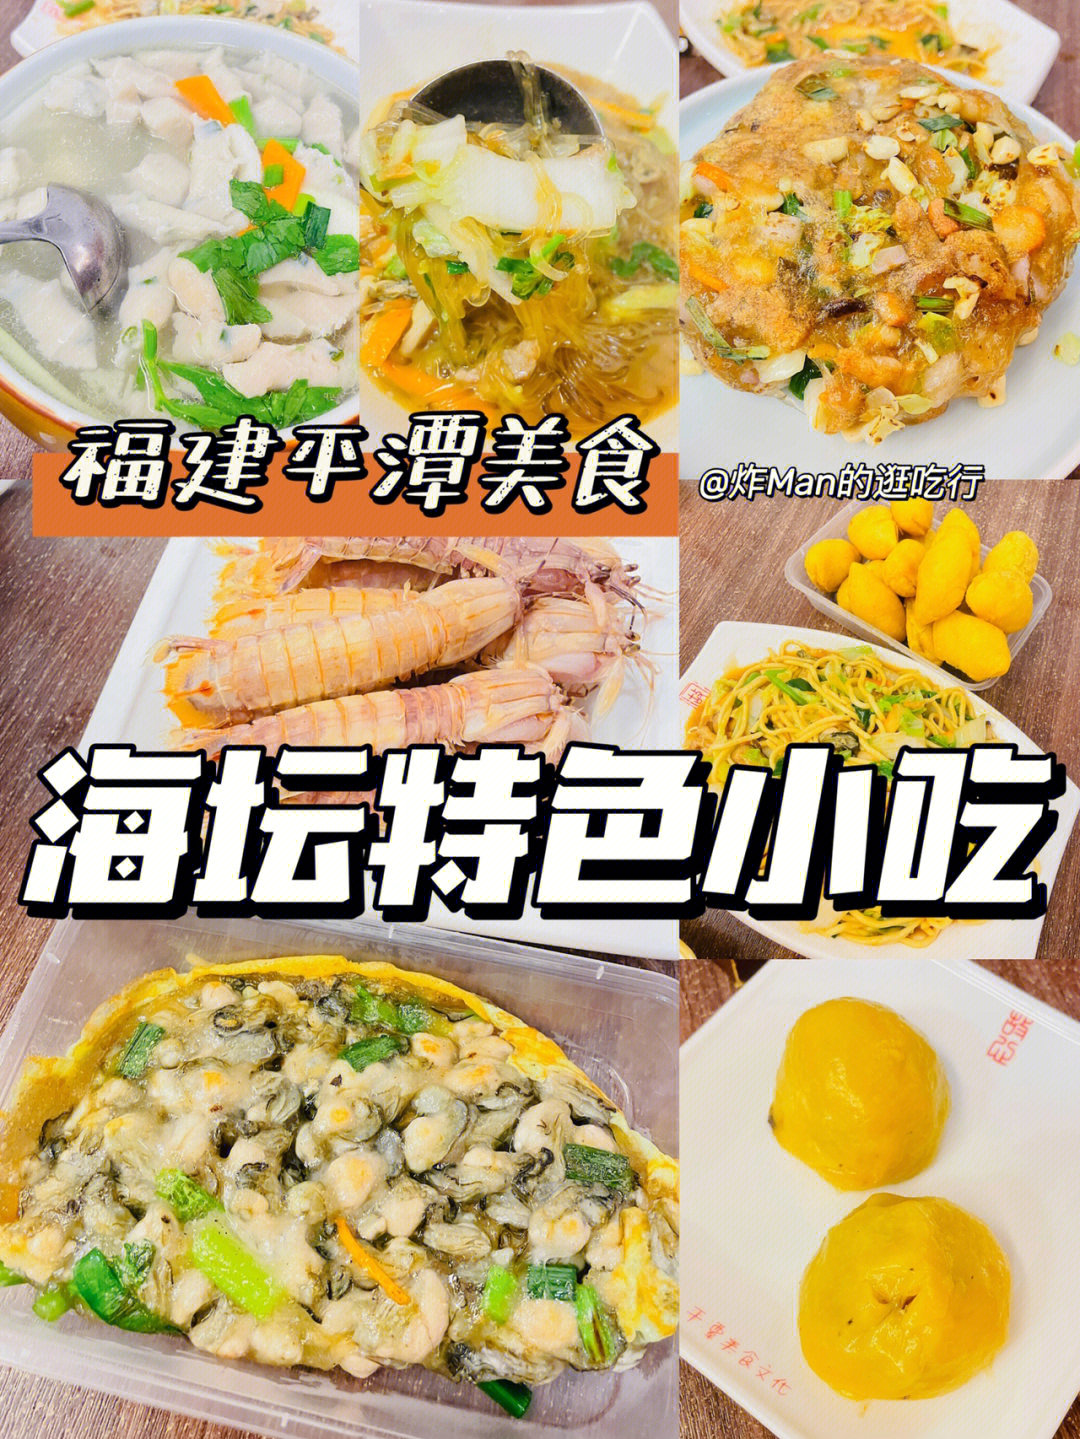 平潭美食推荐饭店图片